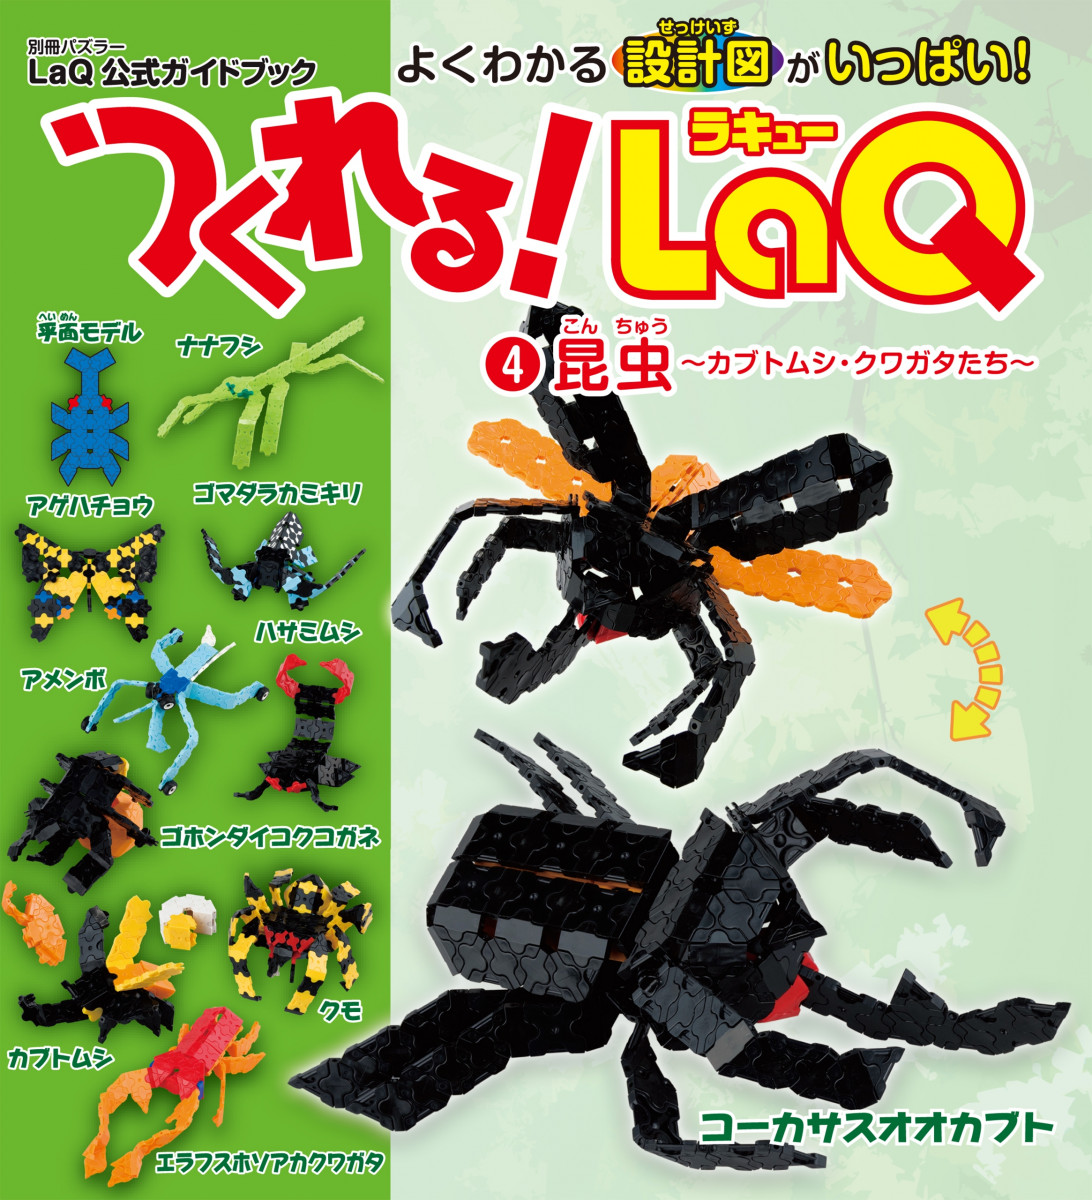 つくれる！LaQ(4)昆虫の商品画像